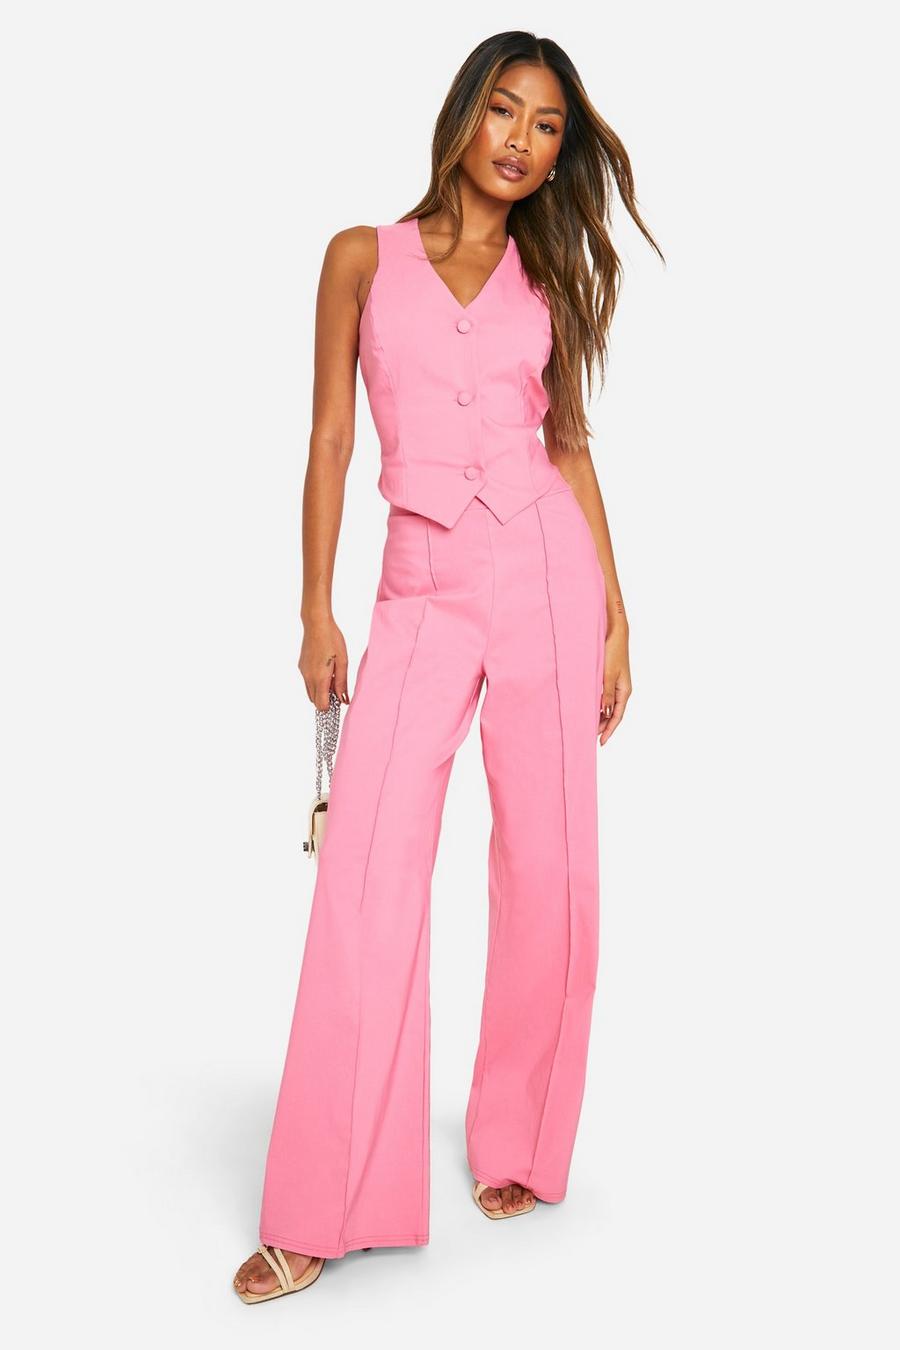 Candy pink Kostymväst med stretch och raka byxor med sömmar